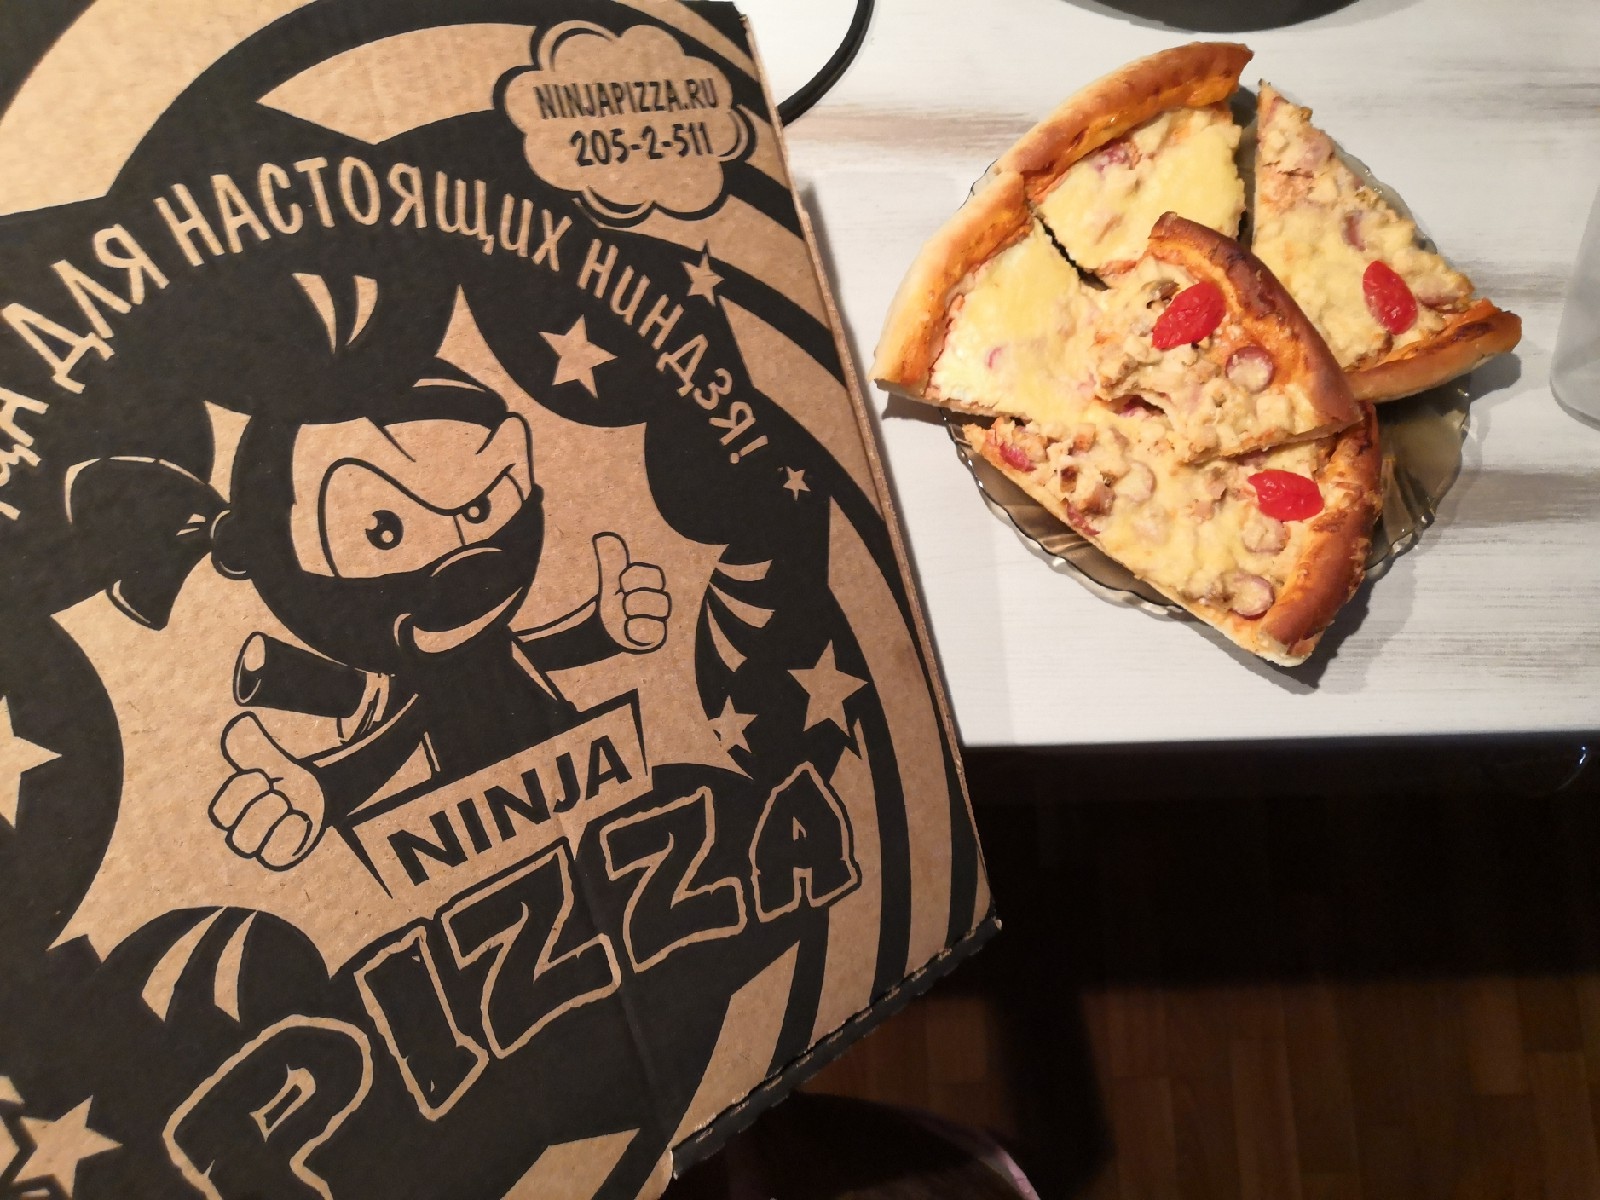 режим работы ниндзя пицца красноярск фото 105